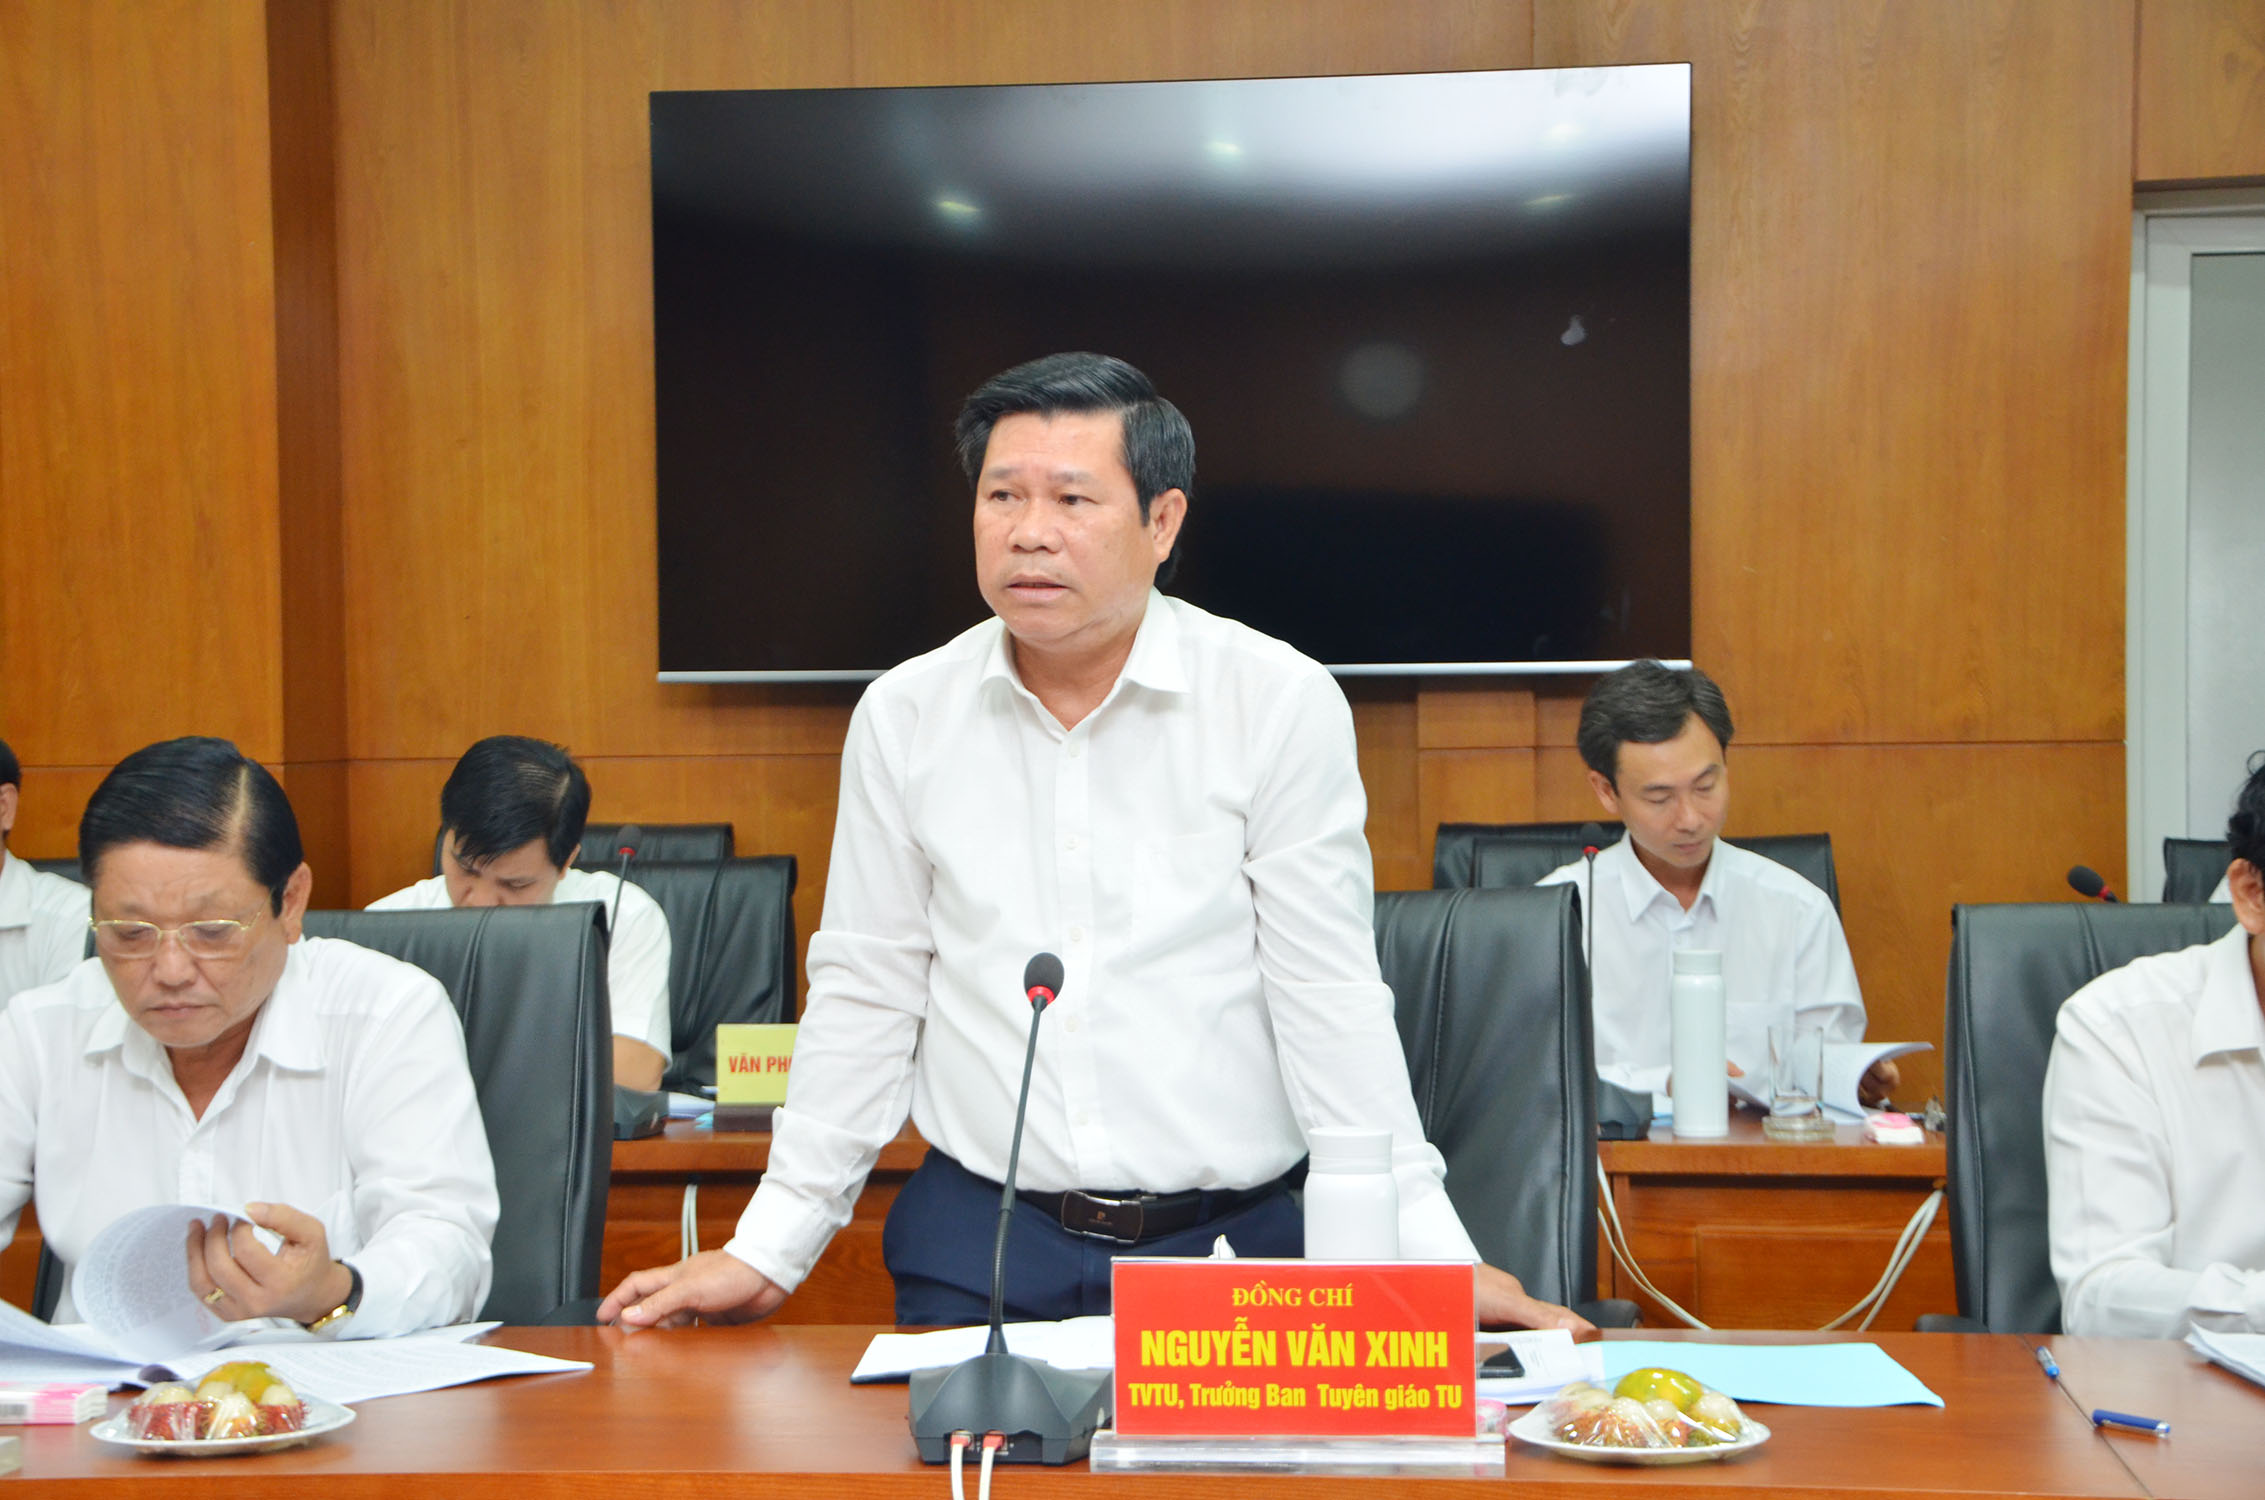 Ông Nguyễn Văn Xinh, Ủy viên Ban Thường vụ Tỉnh ủy, Trưởng Ban Tuyên giáo Tỉnh ủy đóng góp ý kiến vào dự thảo.